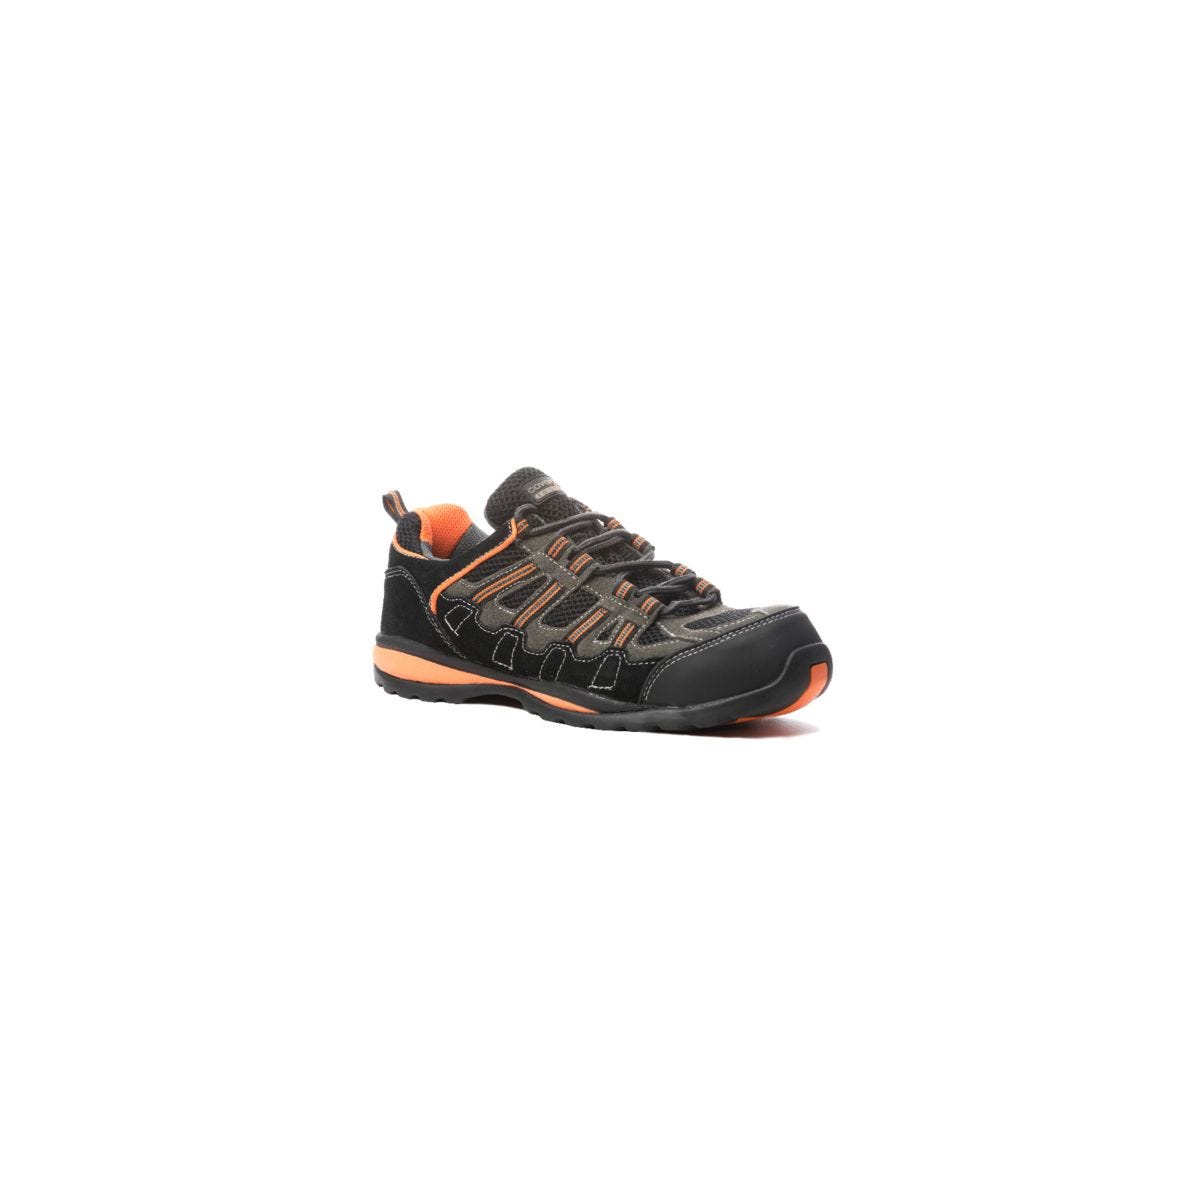 Chaussures de sécurité HELVITE S1P composite noir/orange - COVERGUARD - Taille 47 0